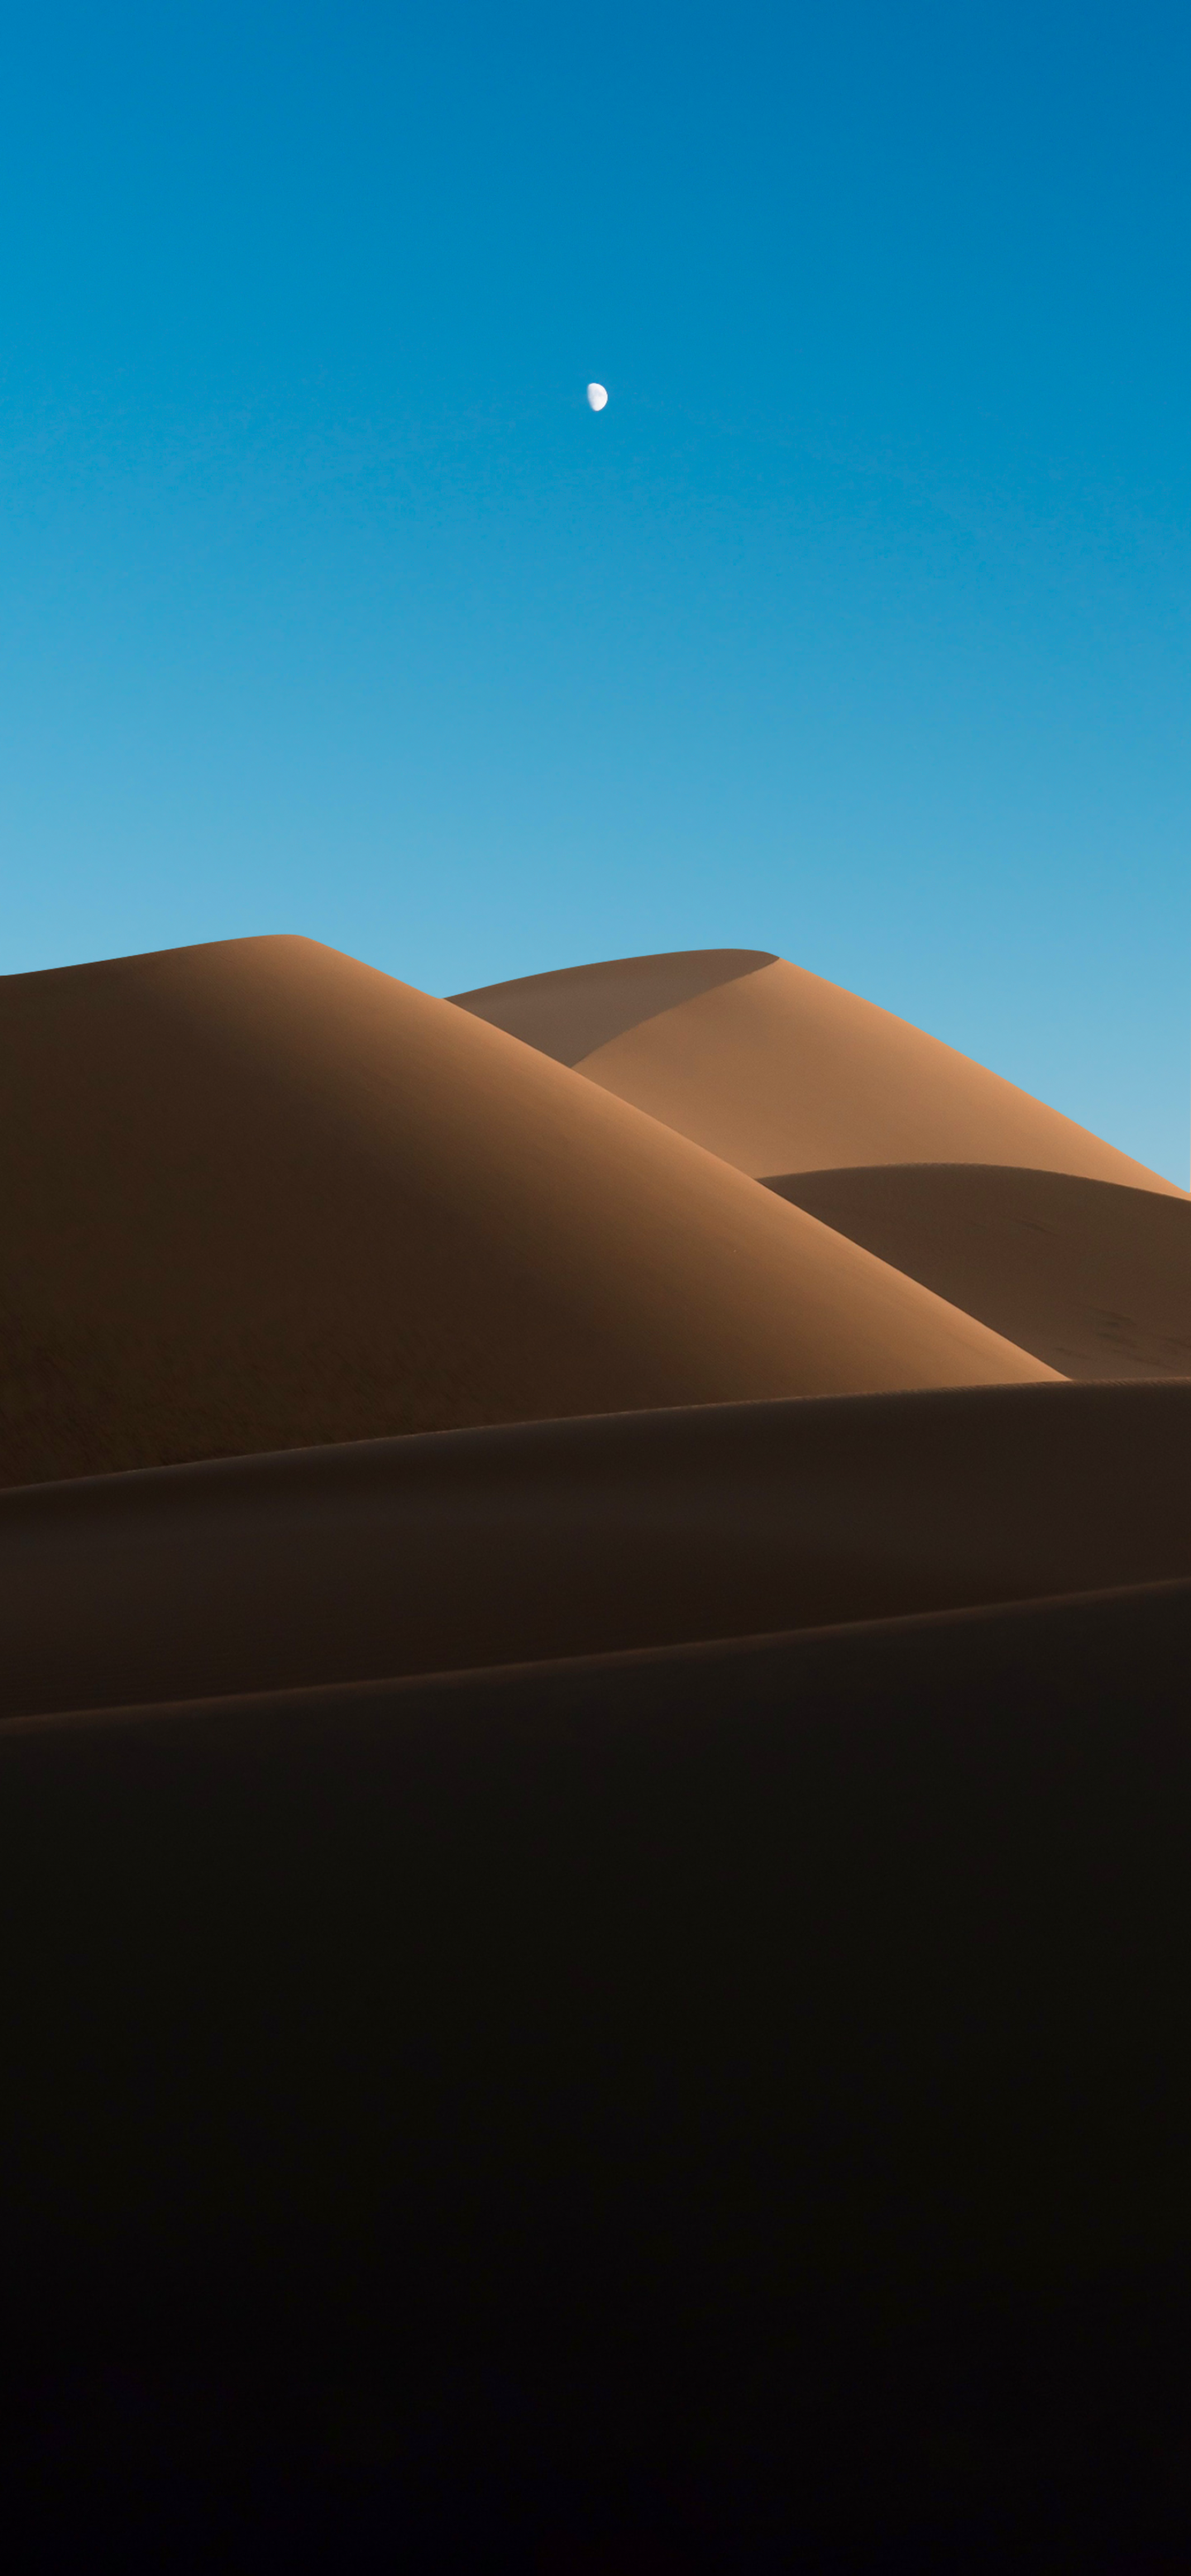 Fondos de pantalla de dunas con amanecer